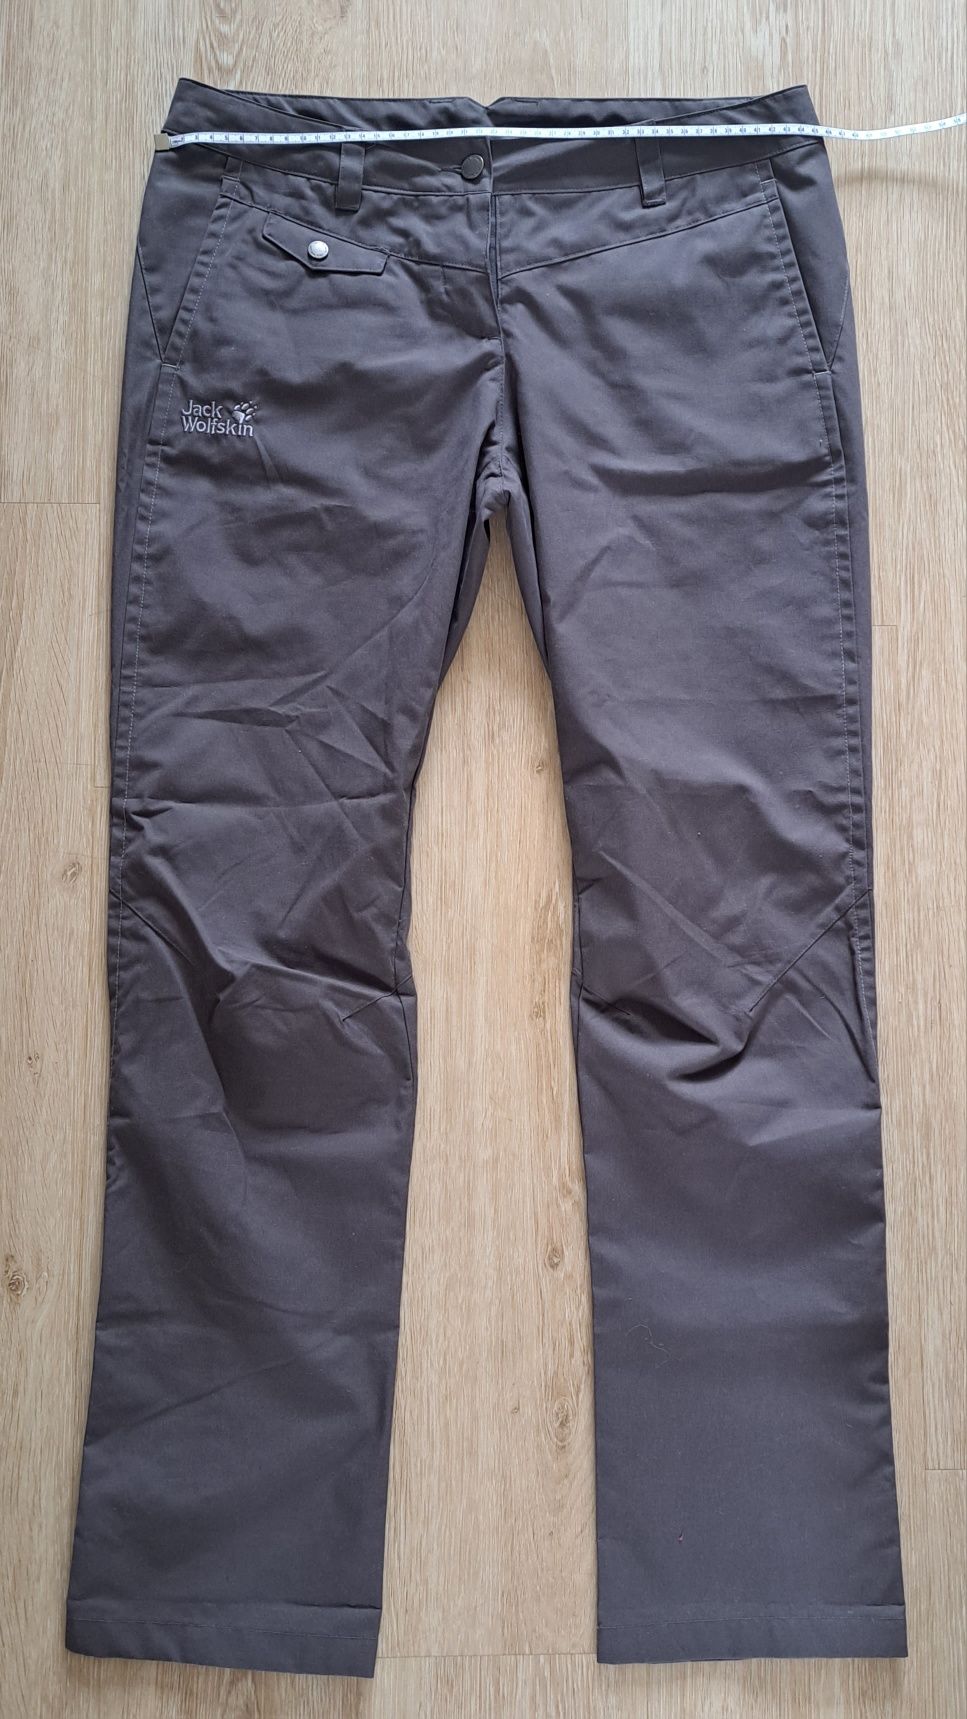 Jack Wolfskin damskie spodnie trekkingowe rozmiar 40